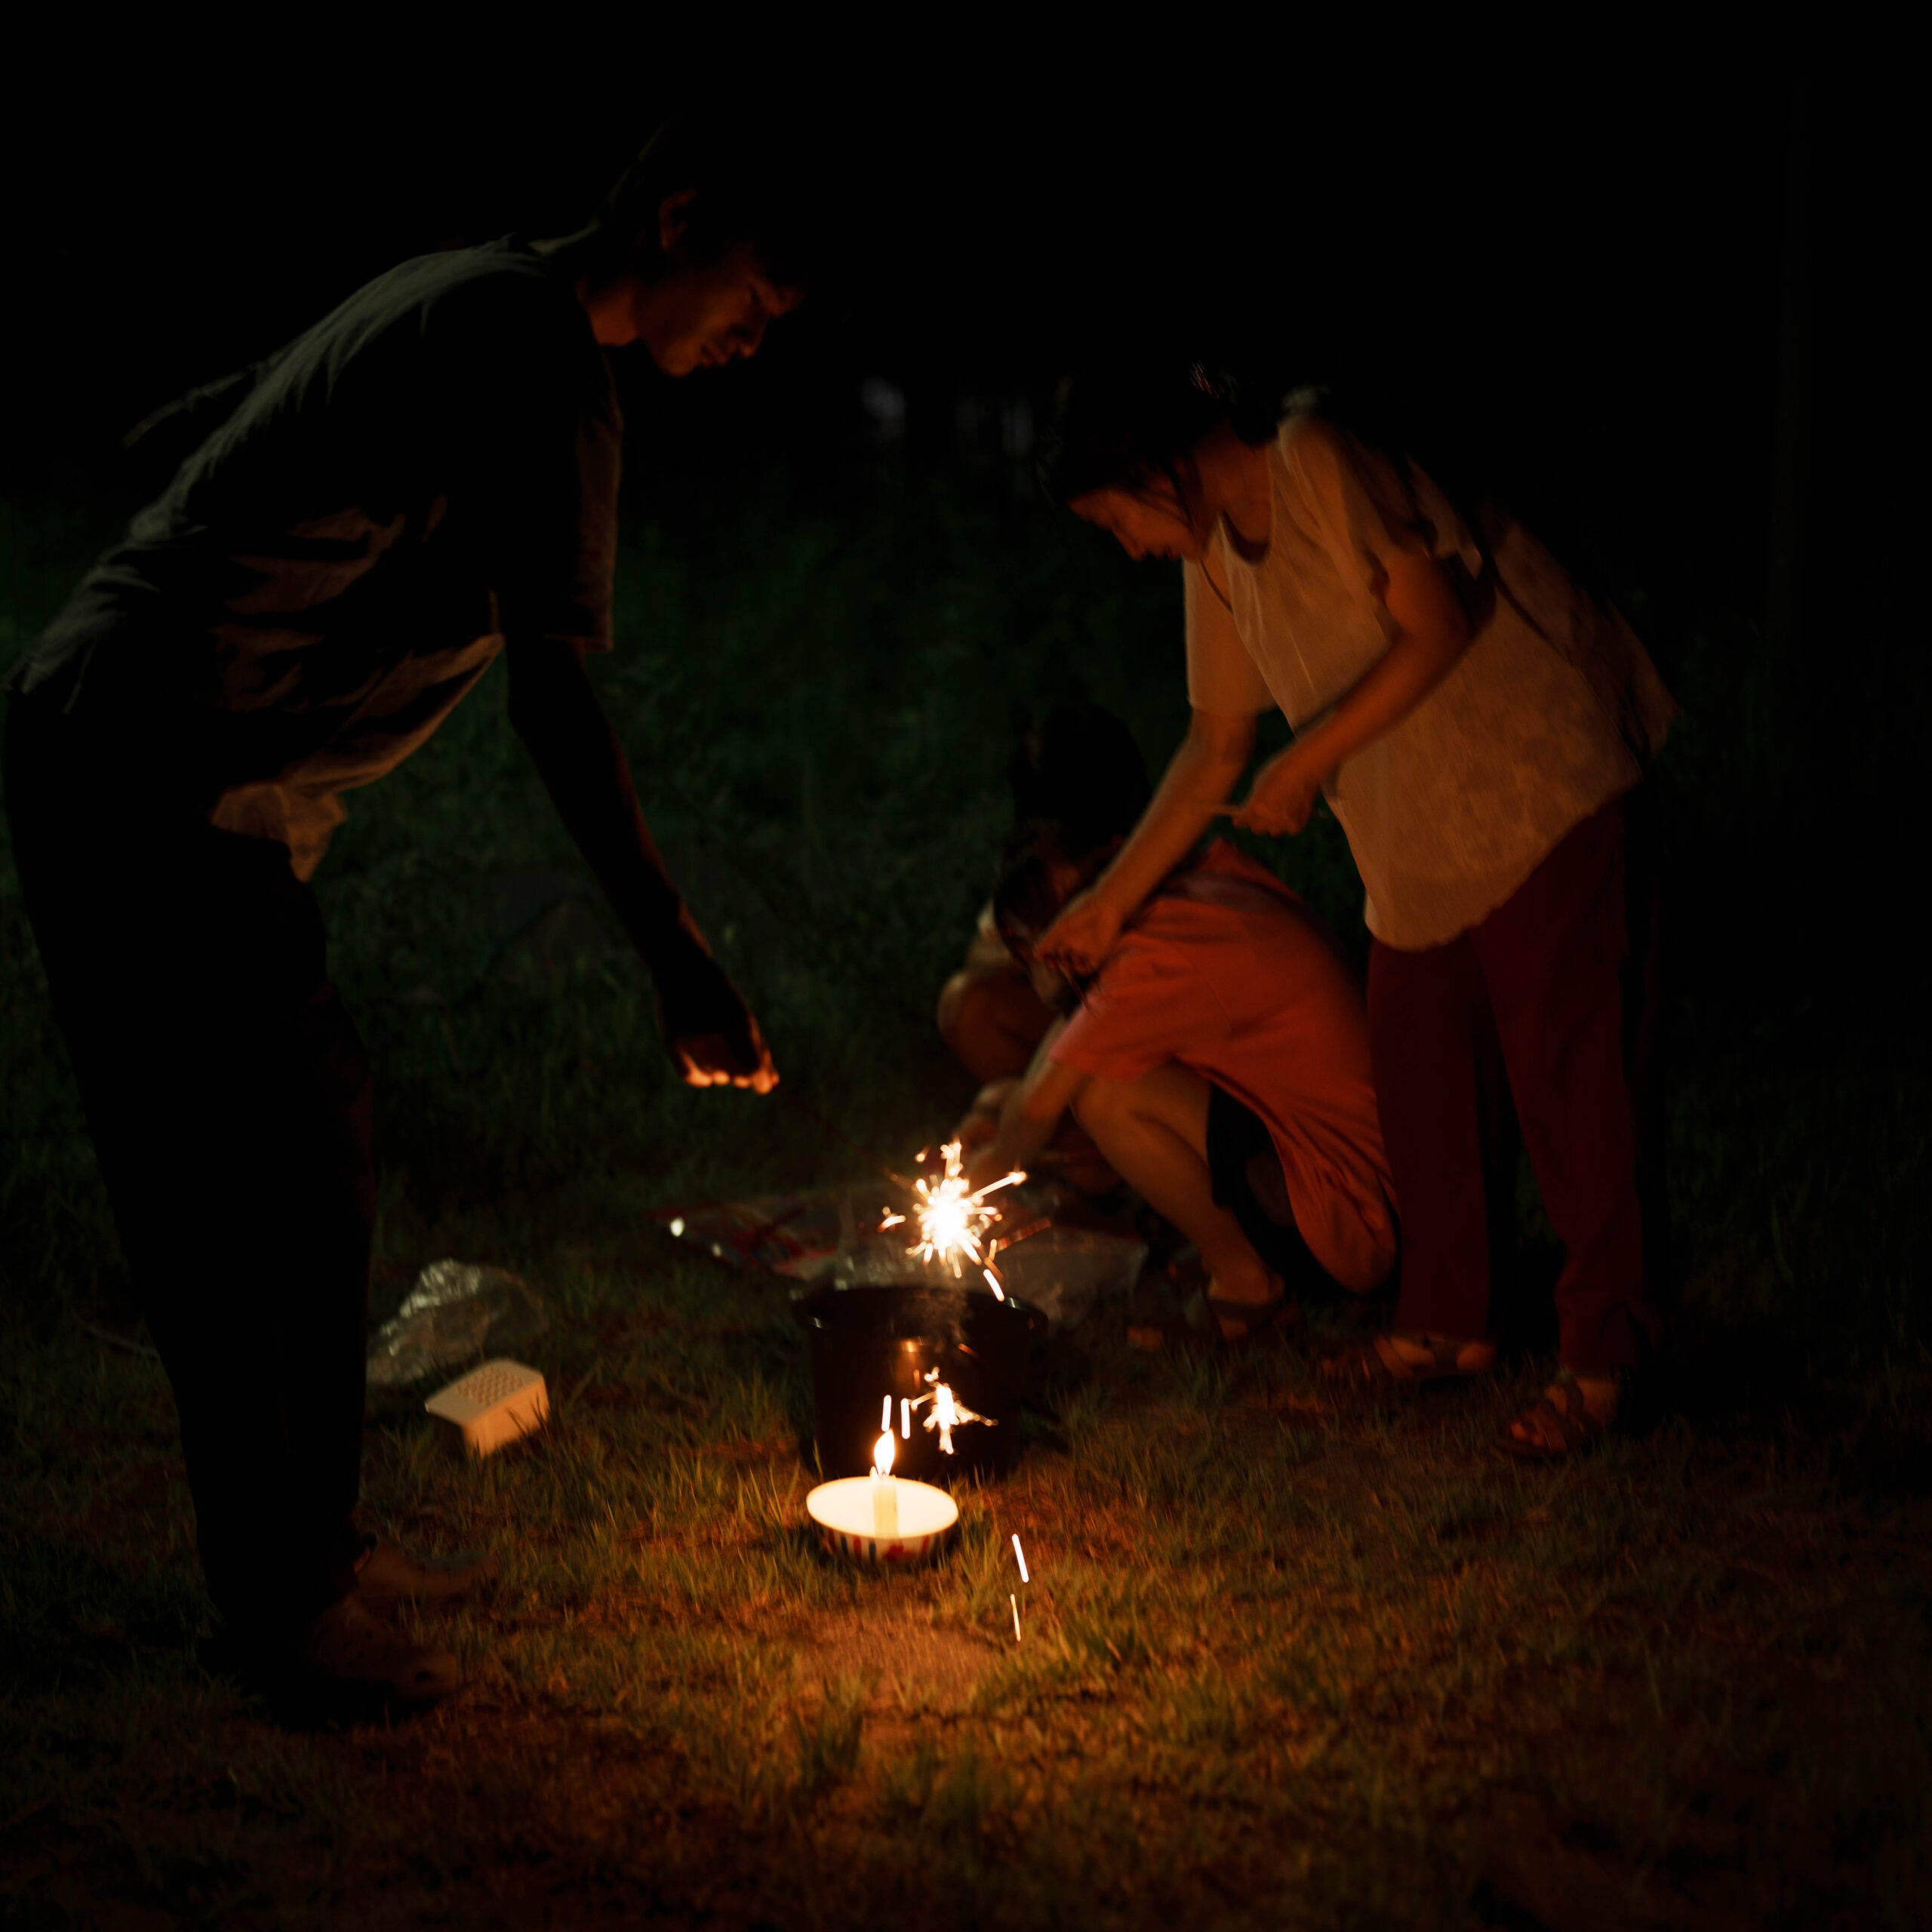 SONY α7IVで撮影した手持ち花火の写真